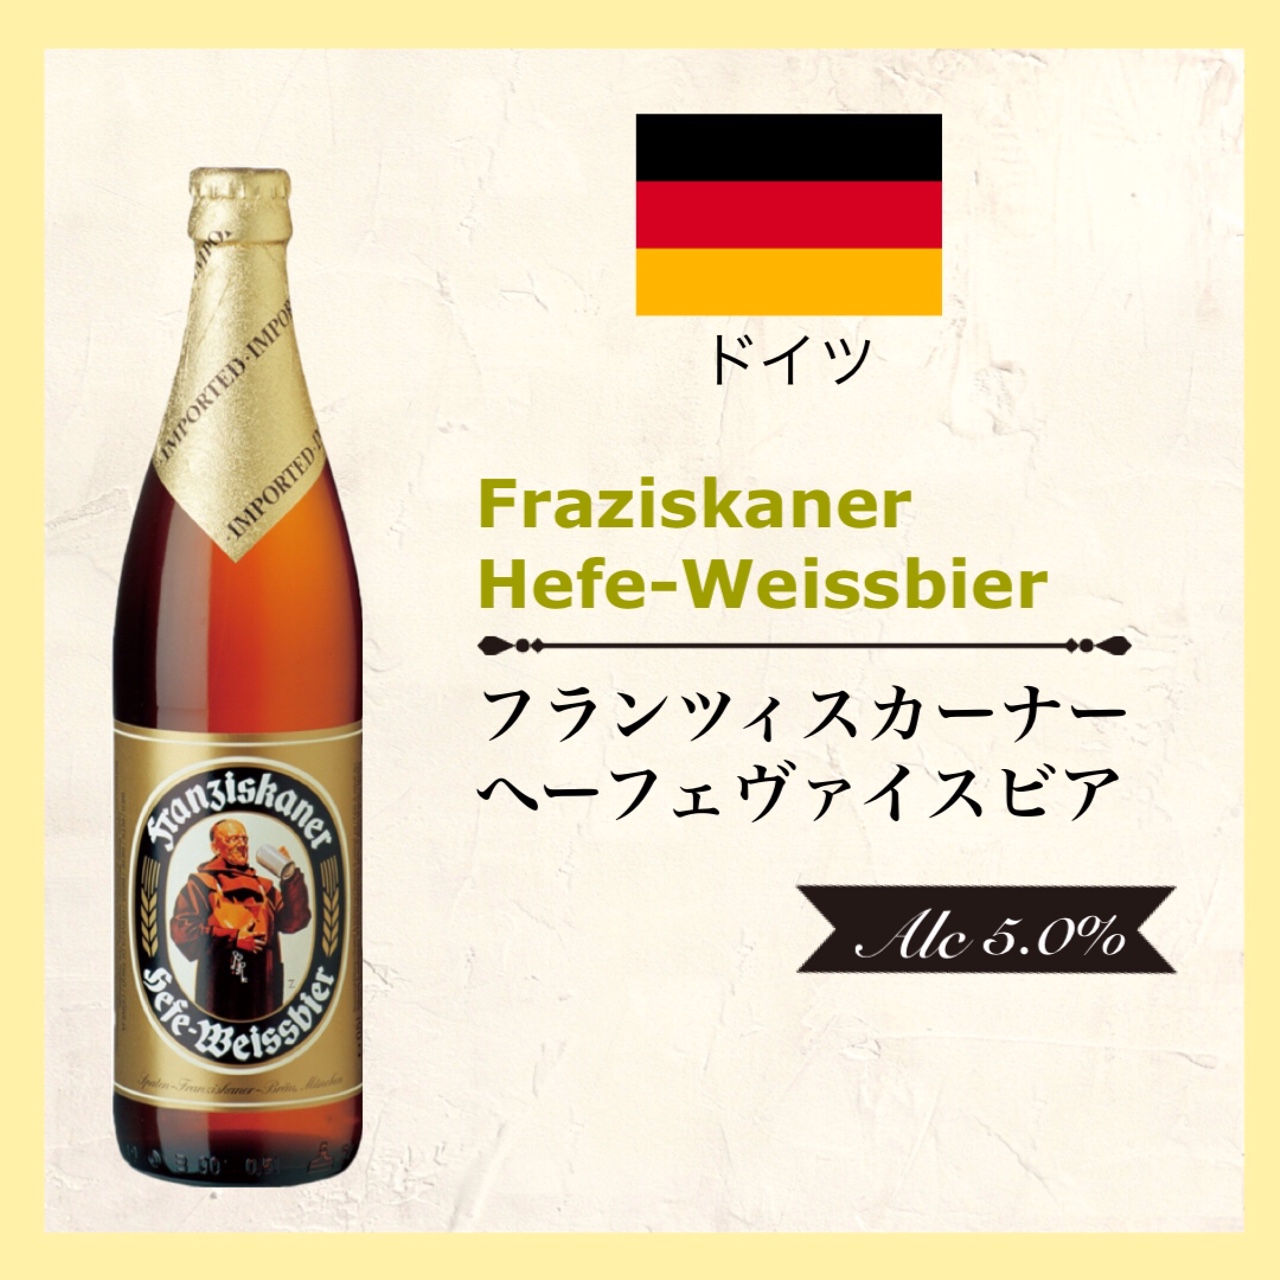 Franziskaner Hefe-Weissbier (ﾌﾗﾝﾂｨｽｶｰﾅｰ ﾍｰﾌｪｳﾞｧｲｽﾋﾞｱ) 500ml